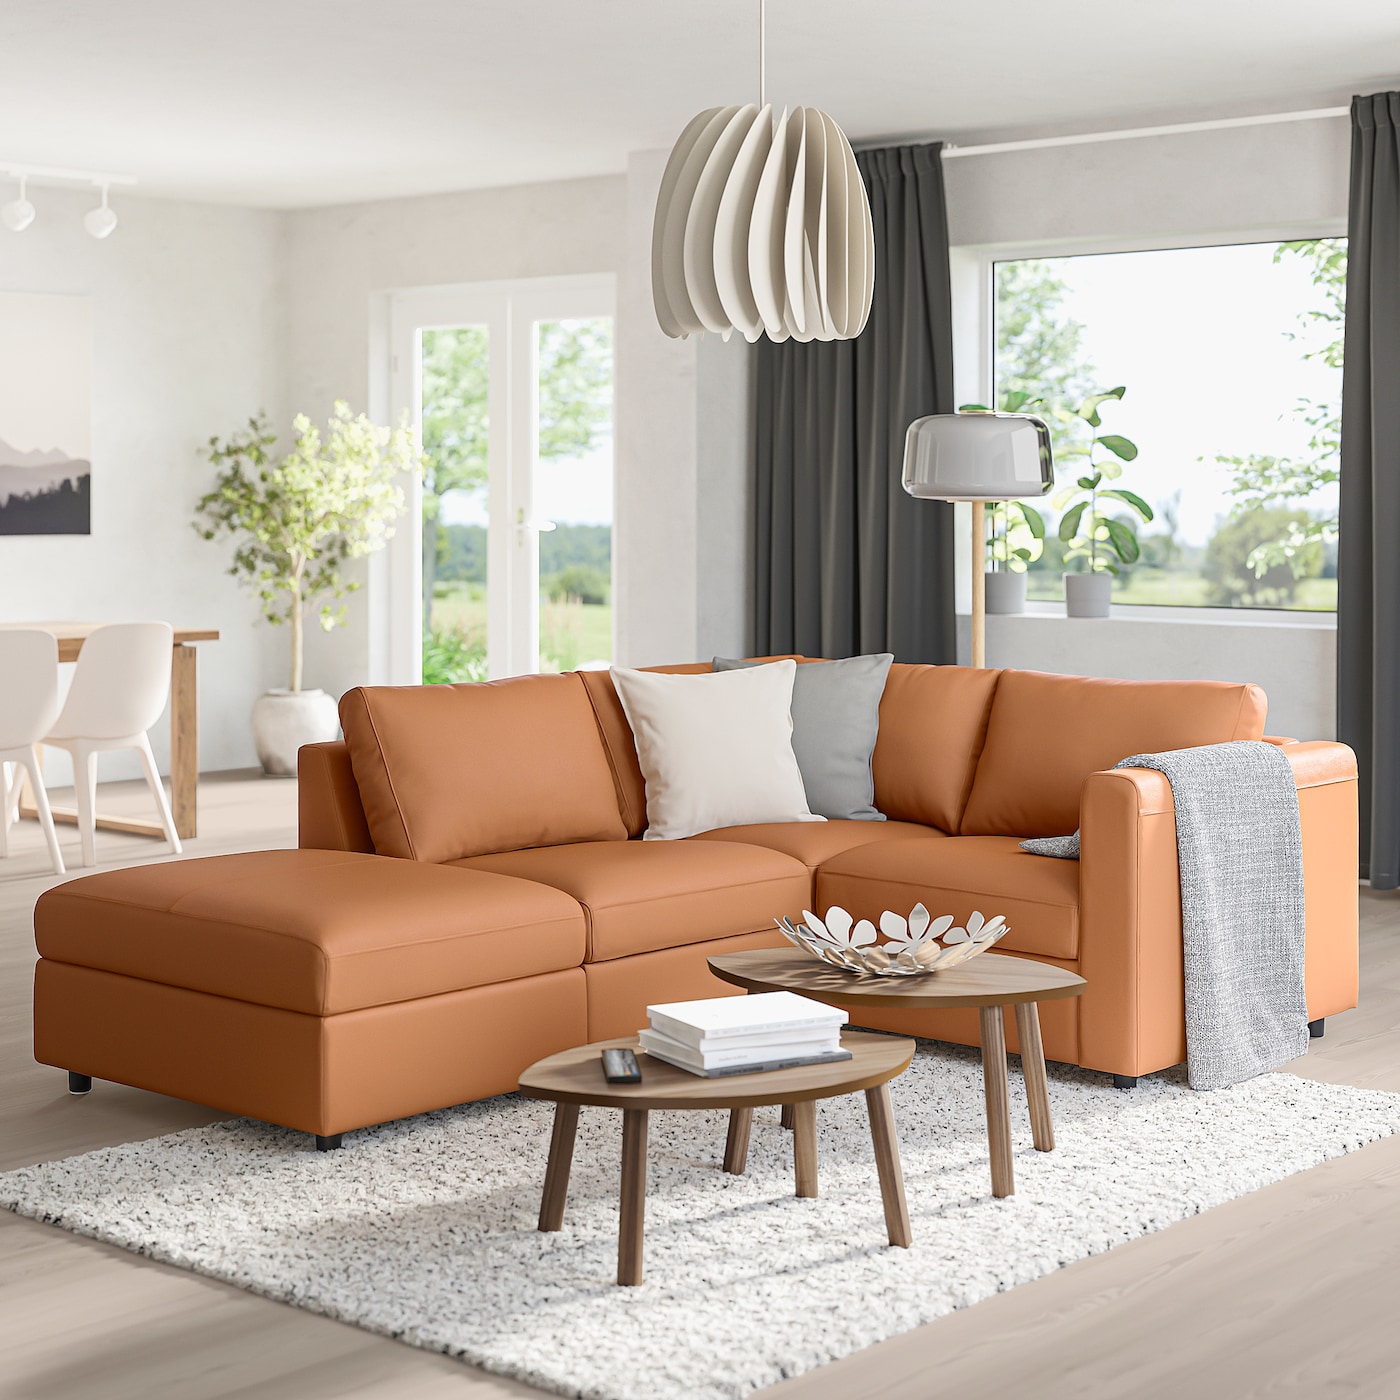 VIMLE ВИМЛЕ 2-местный диван, гранн/Бумстад золотисто-коричневый